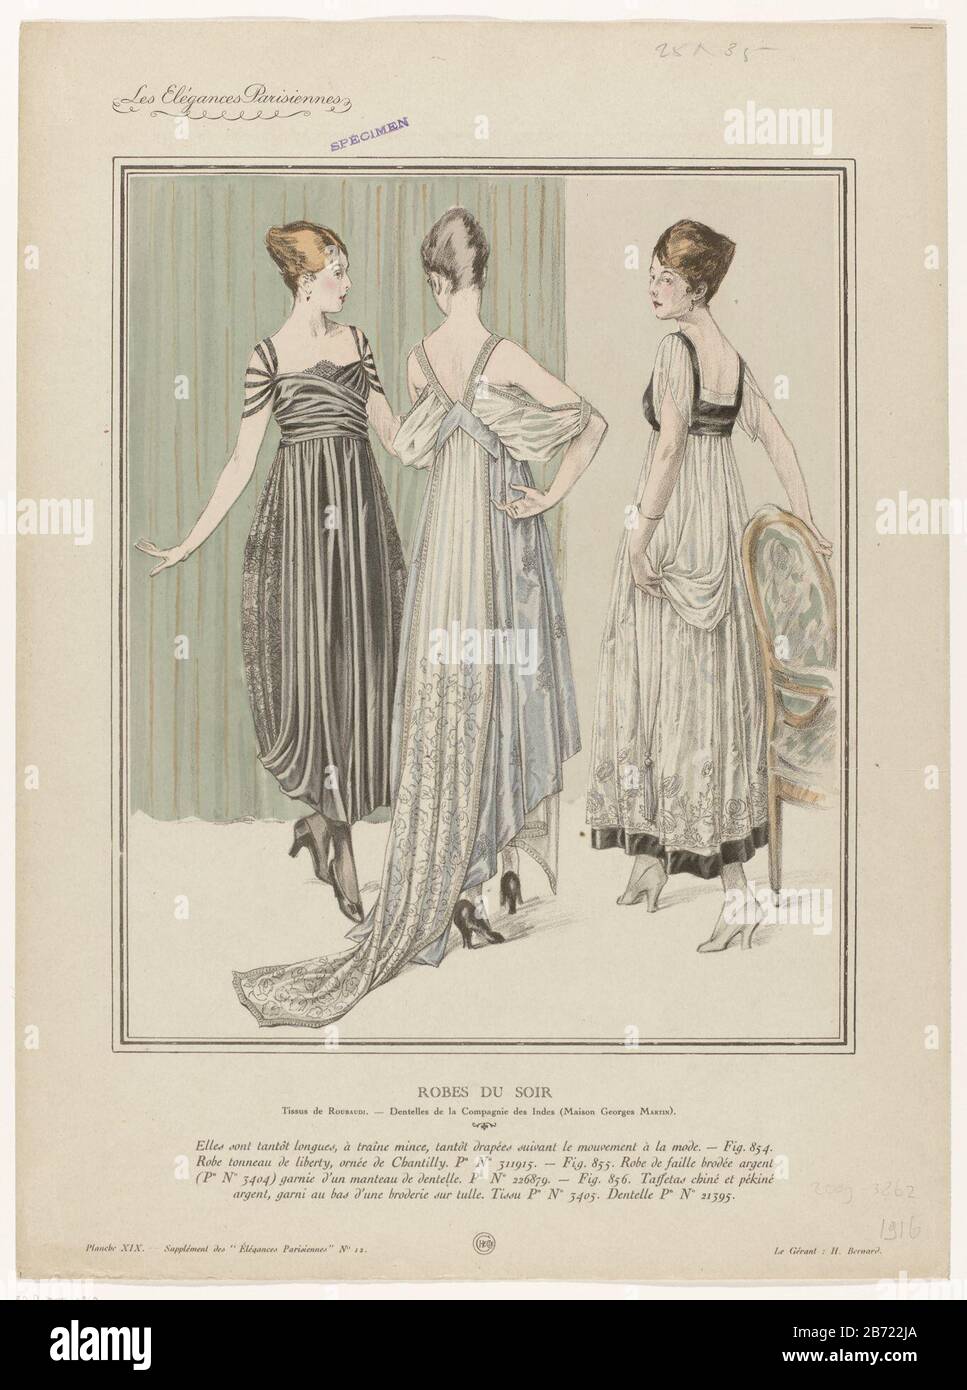 Front: Drie vrouwen gekleed in avondjaponnen, genummerd Fig. 854, 855 in  856. Volgens het onderschrift: Stoffen van Roubaudi. Kant van India Company  (House George Martin). Fig. 854: japan van Liberty, versierd puts '